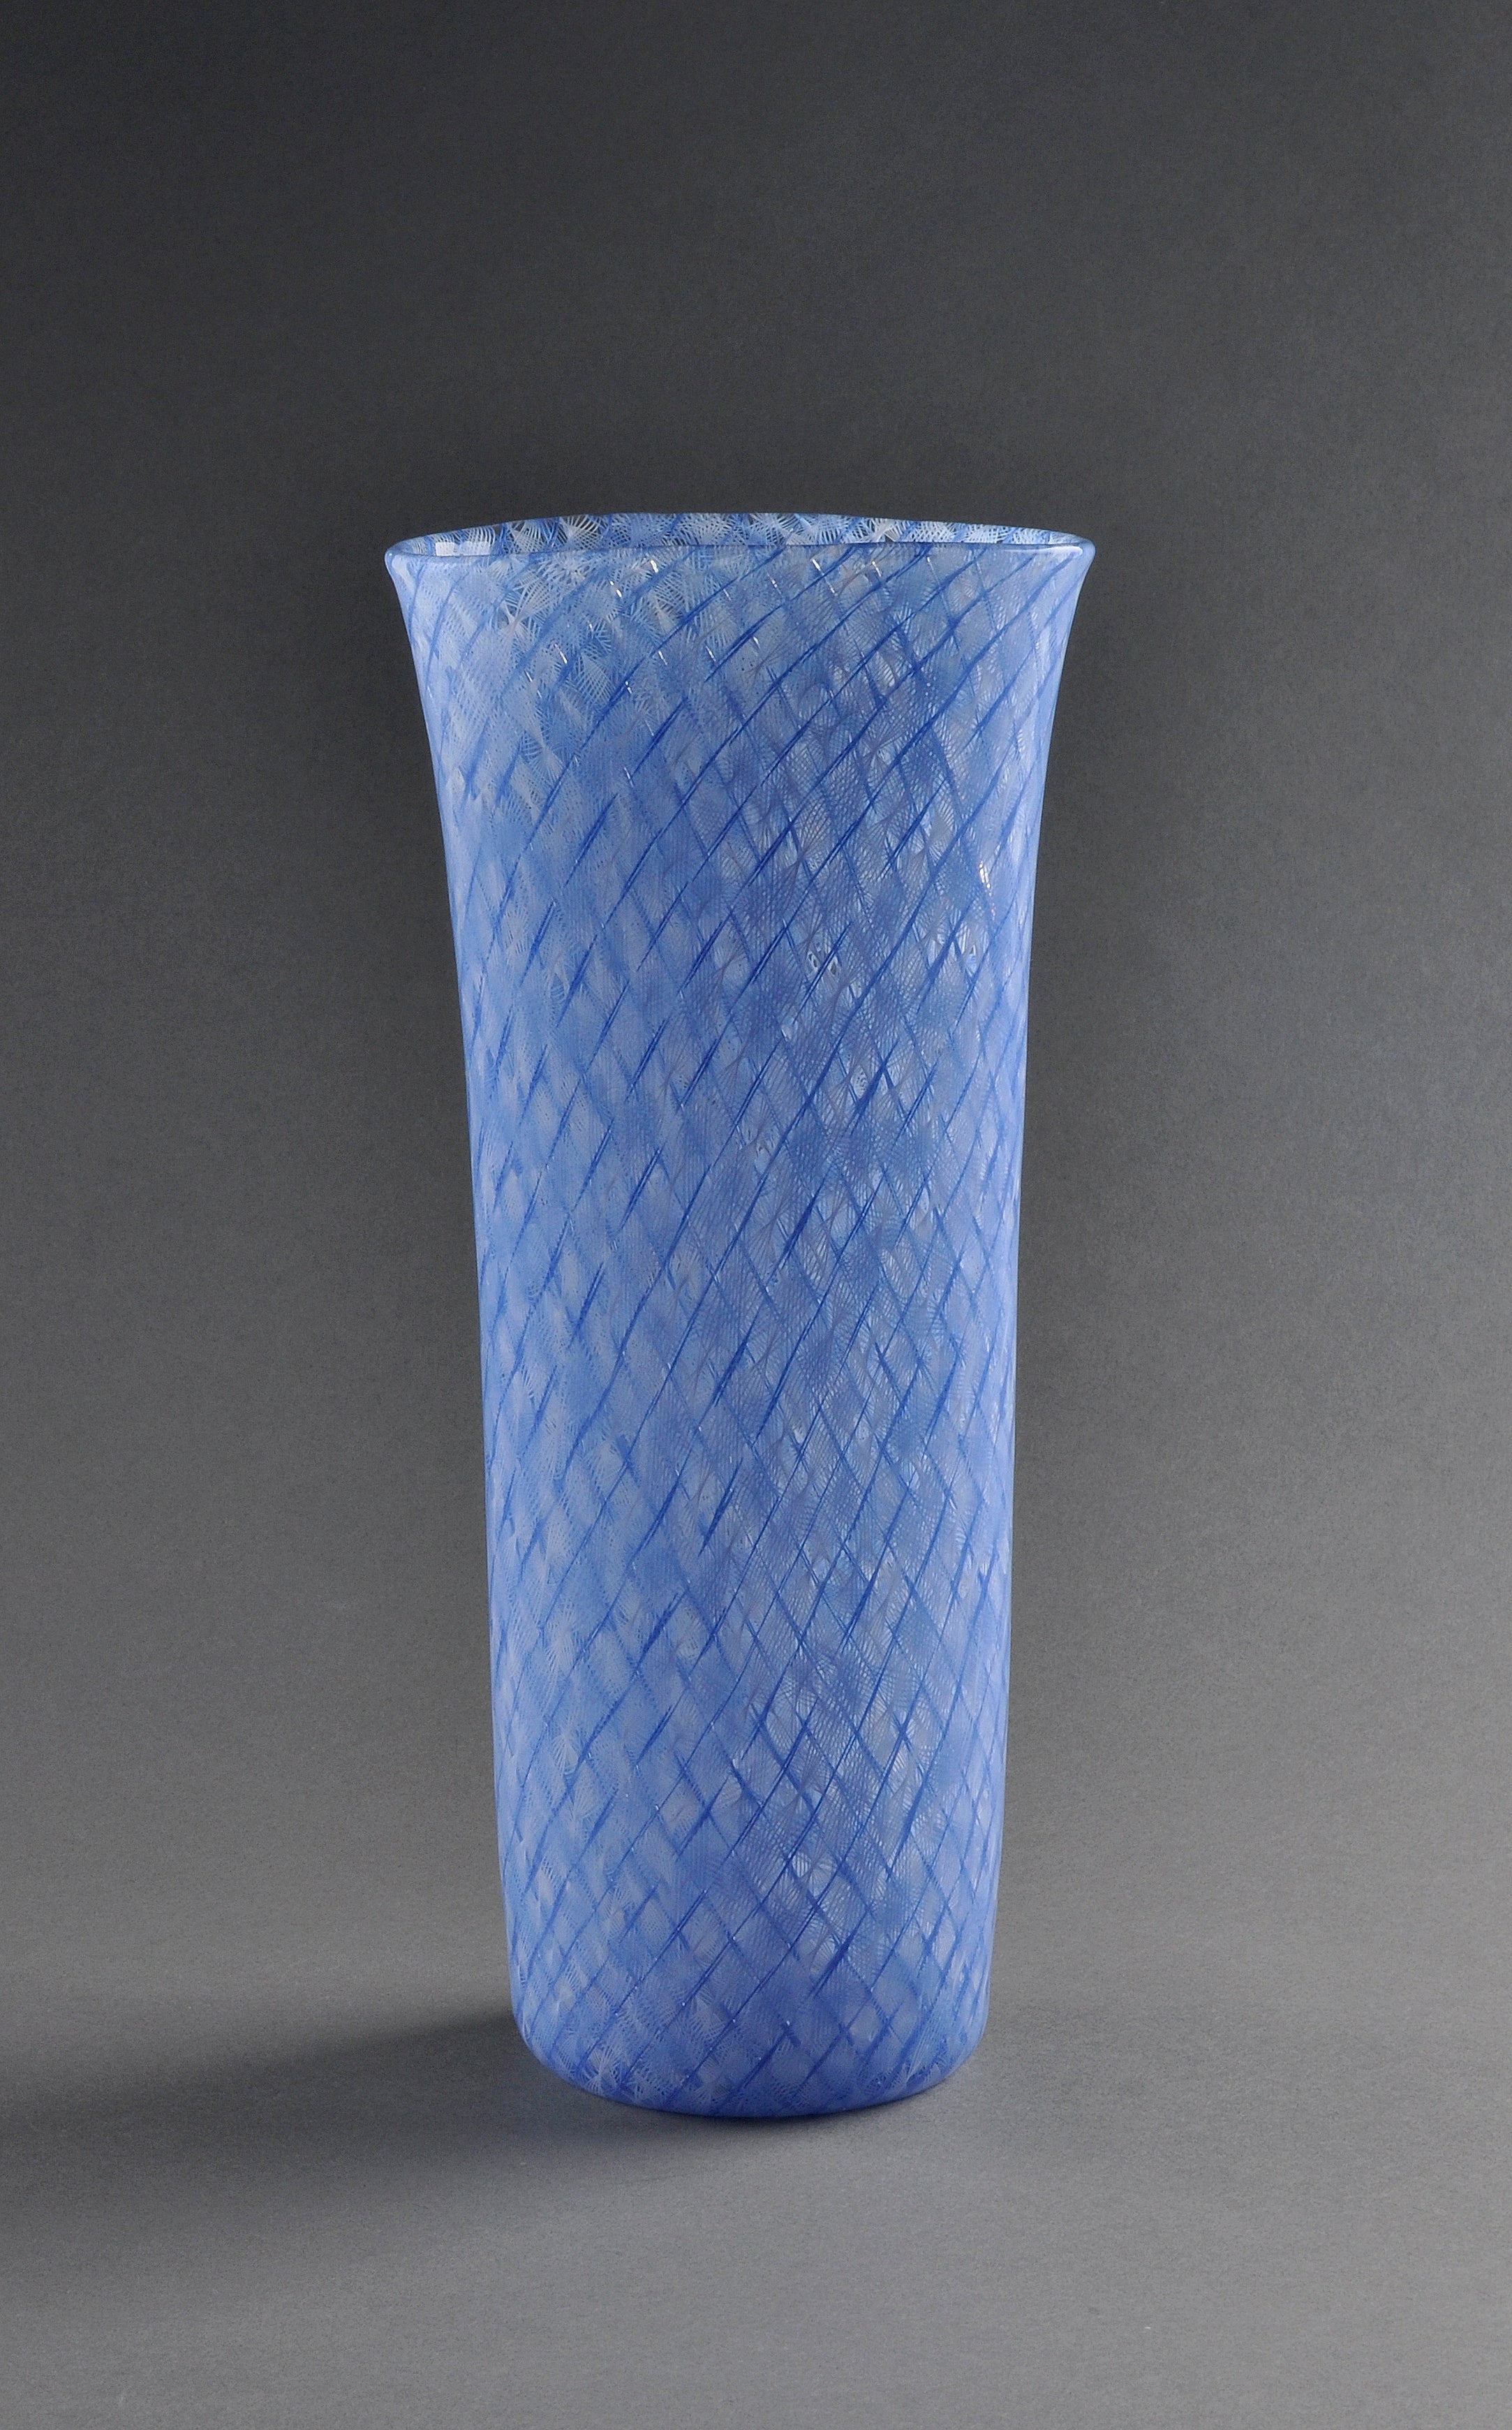 Venini - Rare "Reticello Zanfirico" Vase Design by Paolo Venini 1954